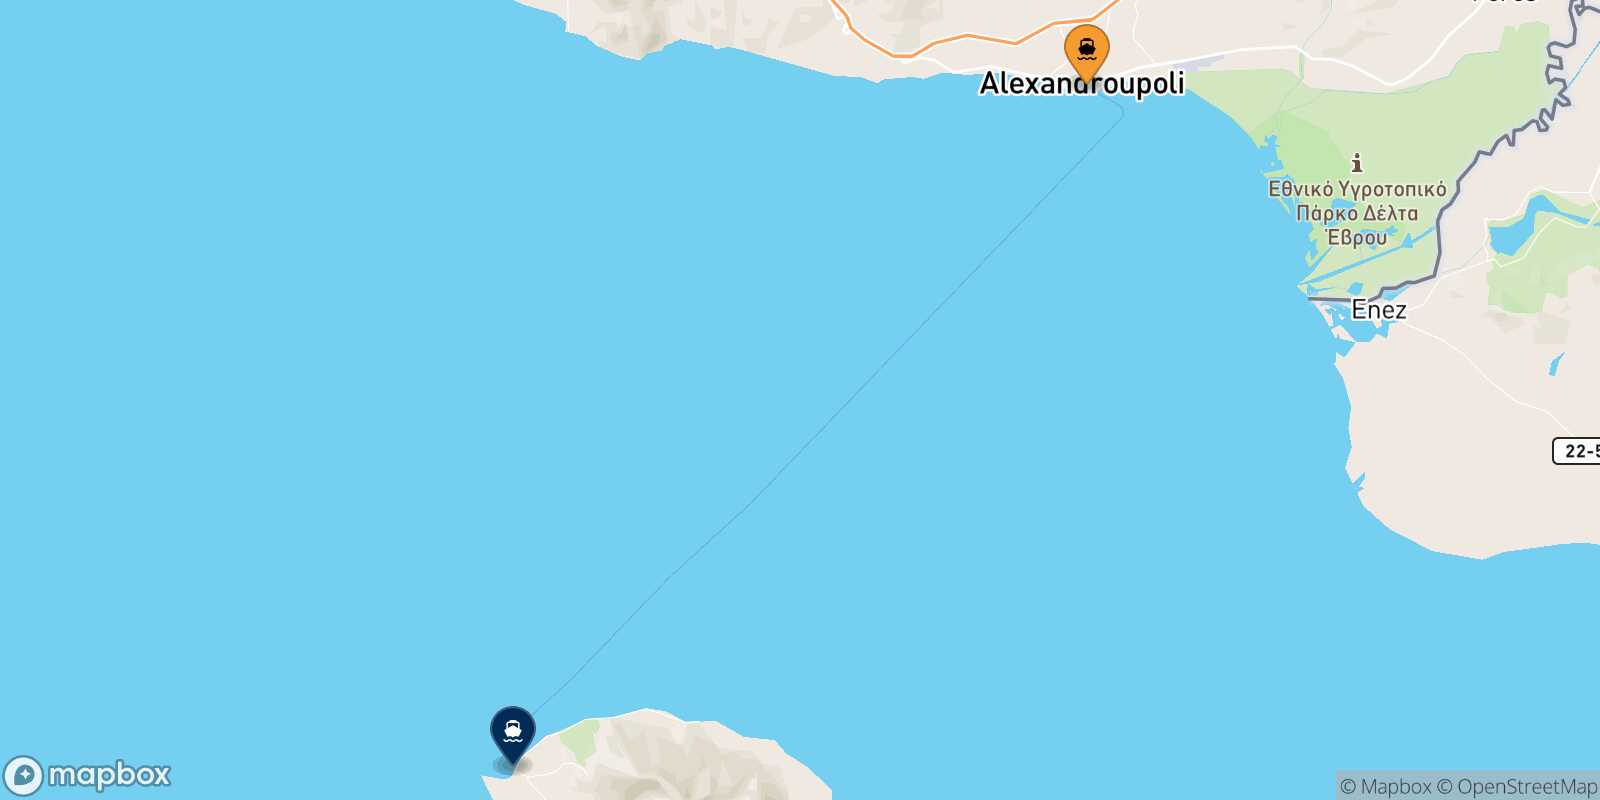 Mapa de la ruta Alexandroupoli Samothraki